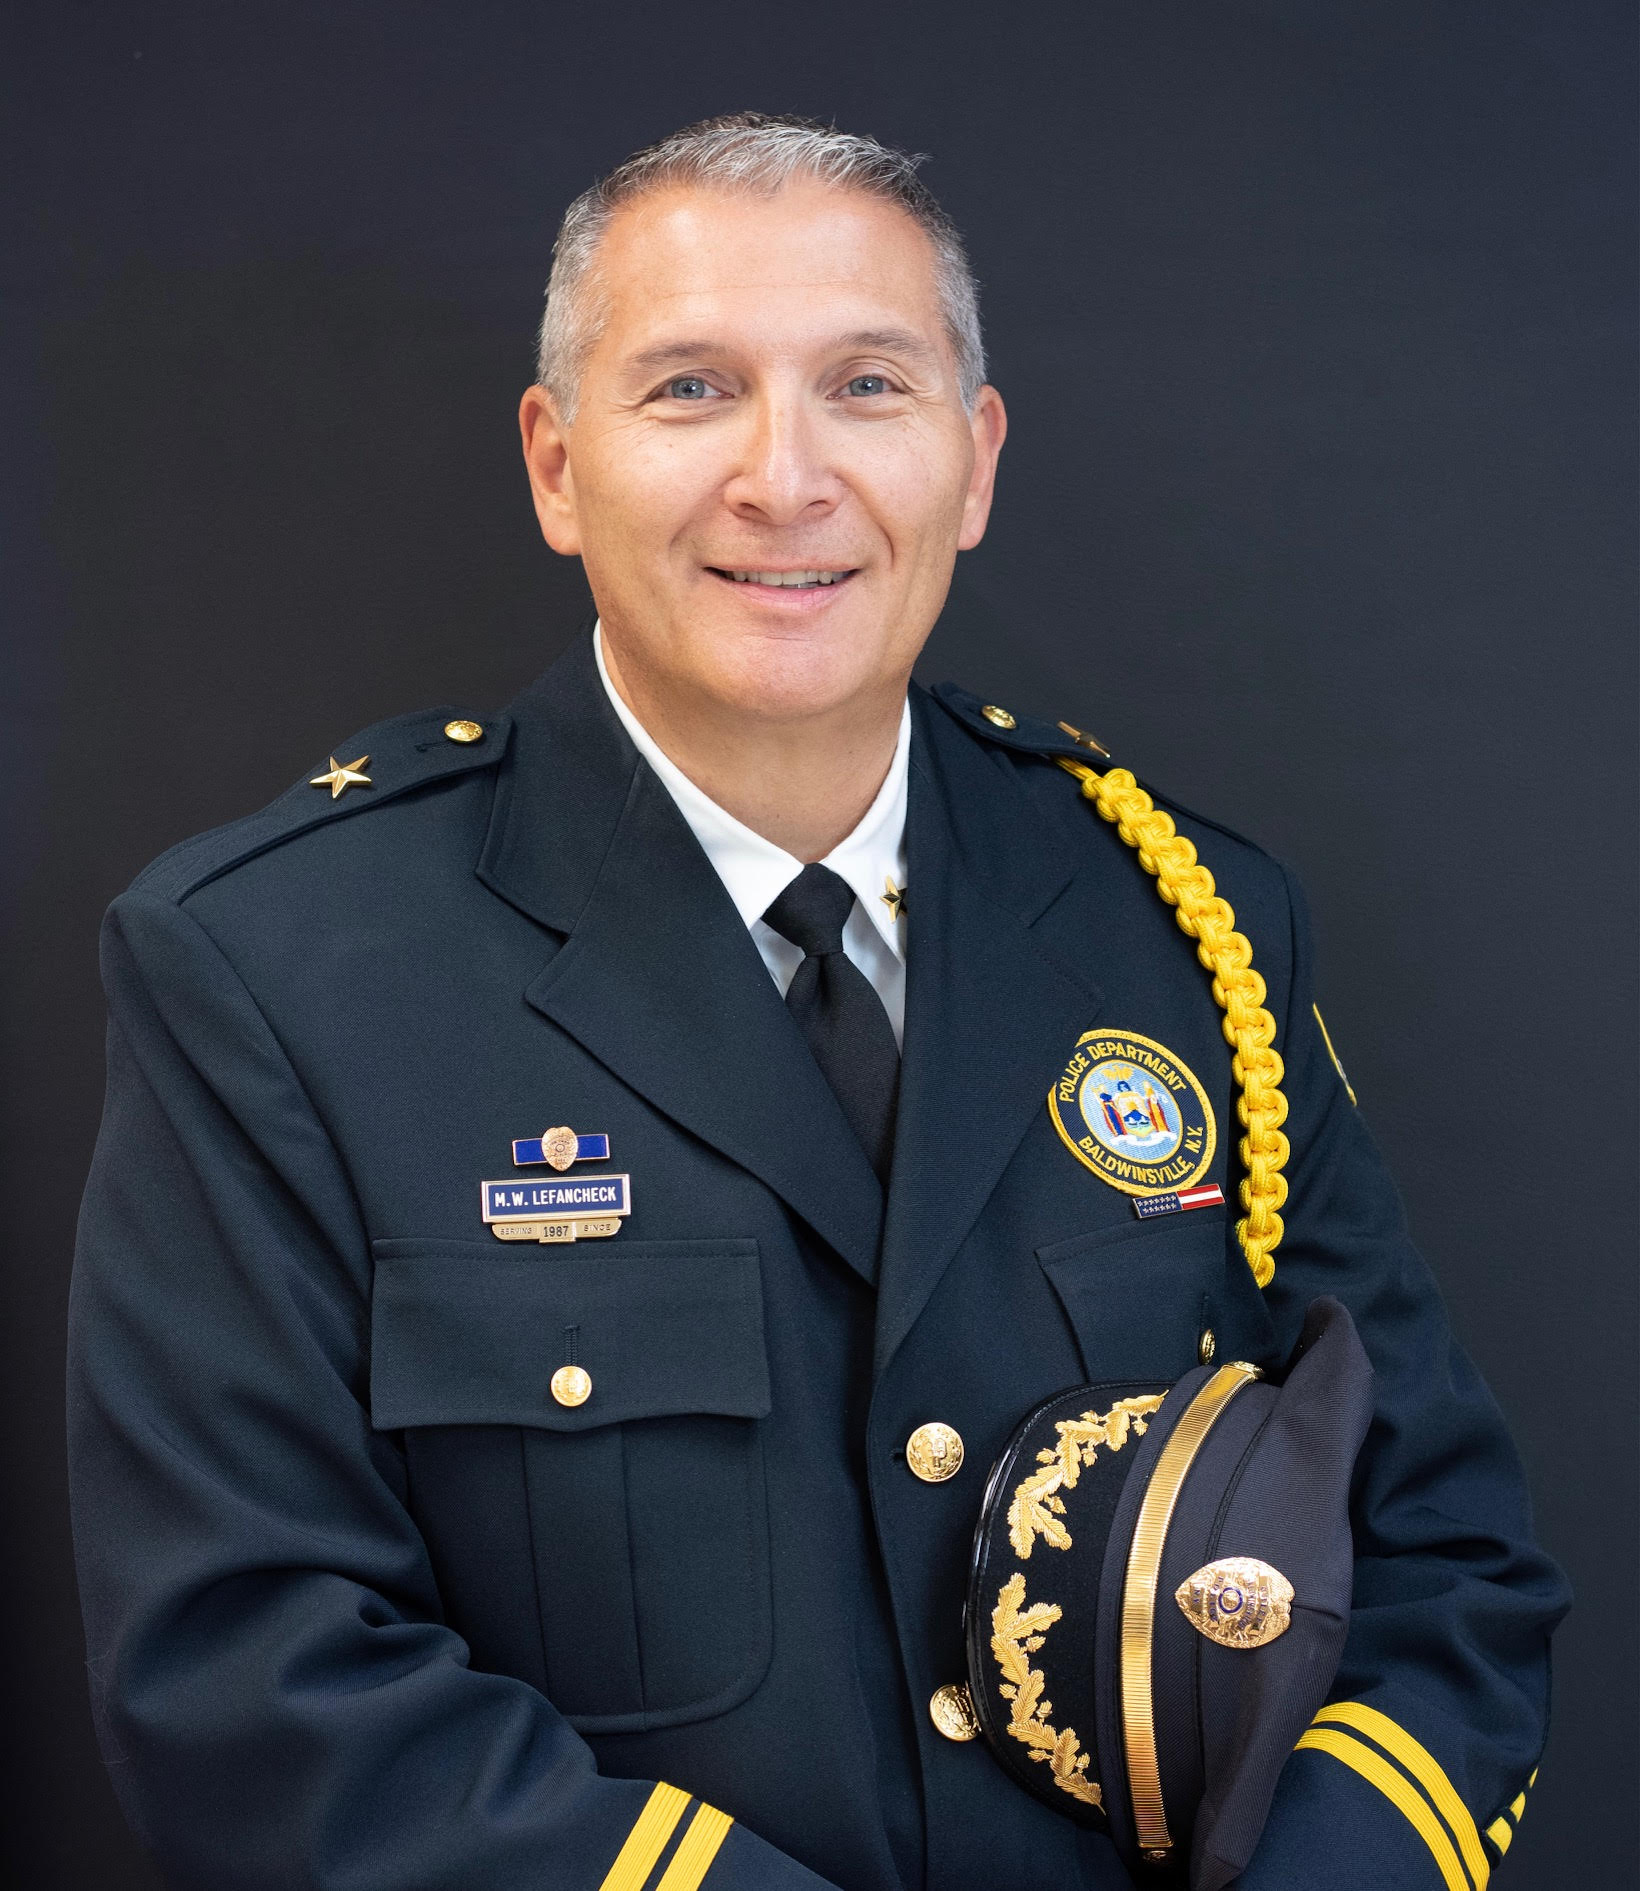 Chief Michael Lefancheck